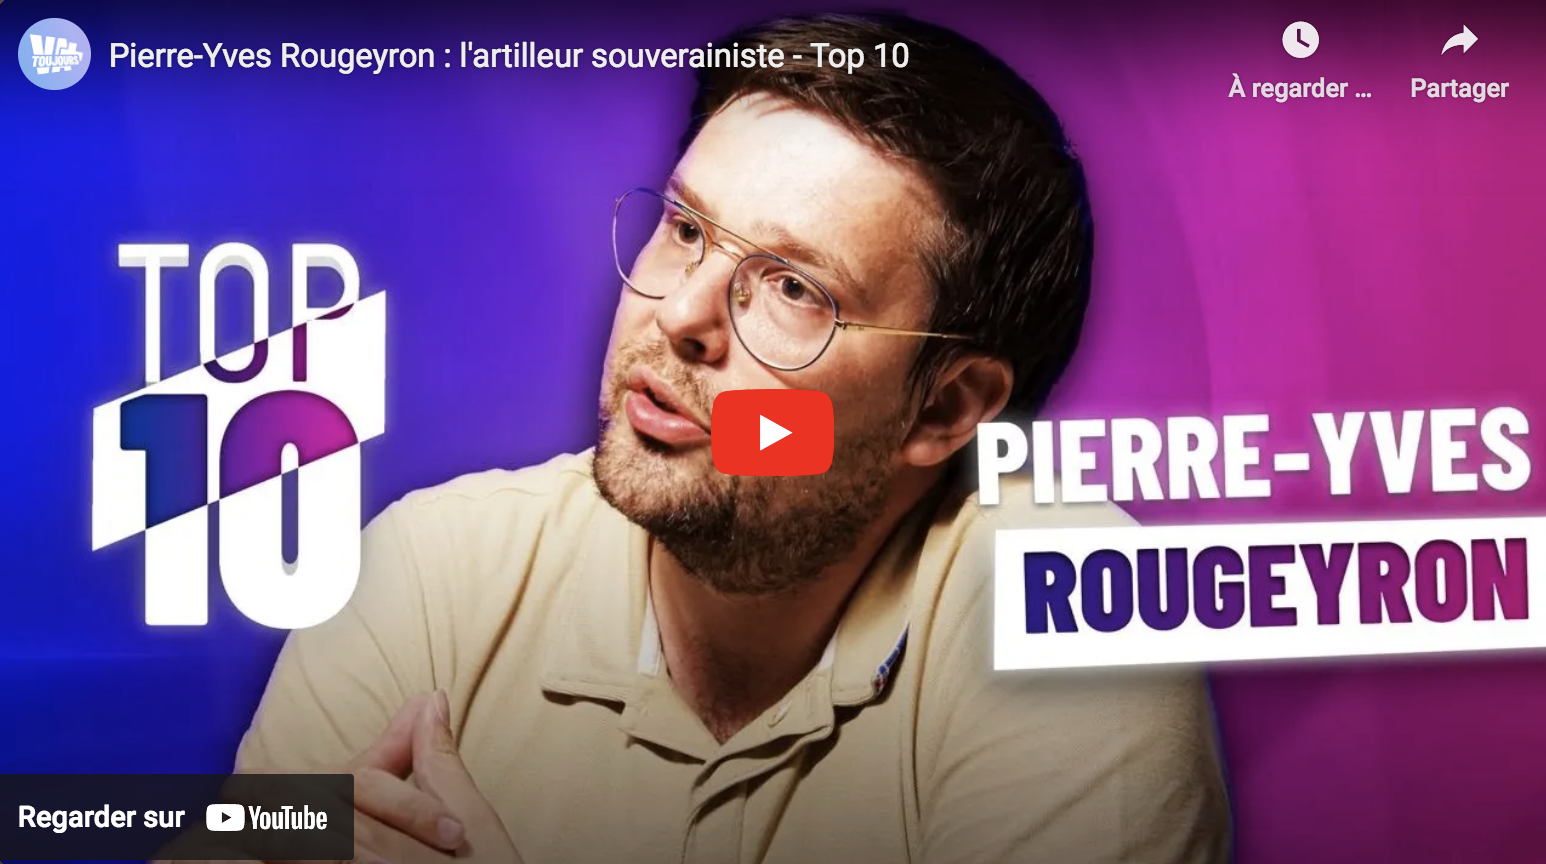 Pierre-Yves Rougeyron : l’artilleur souverainiste (Top 10)